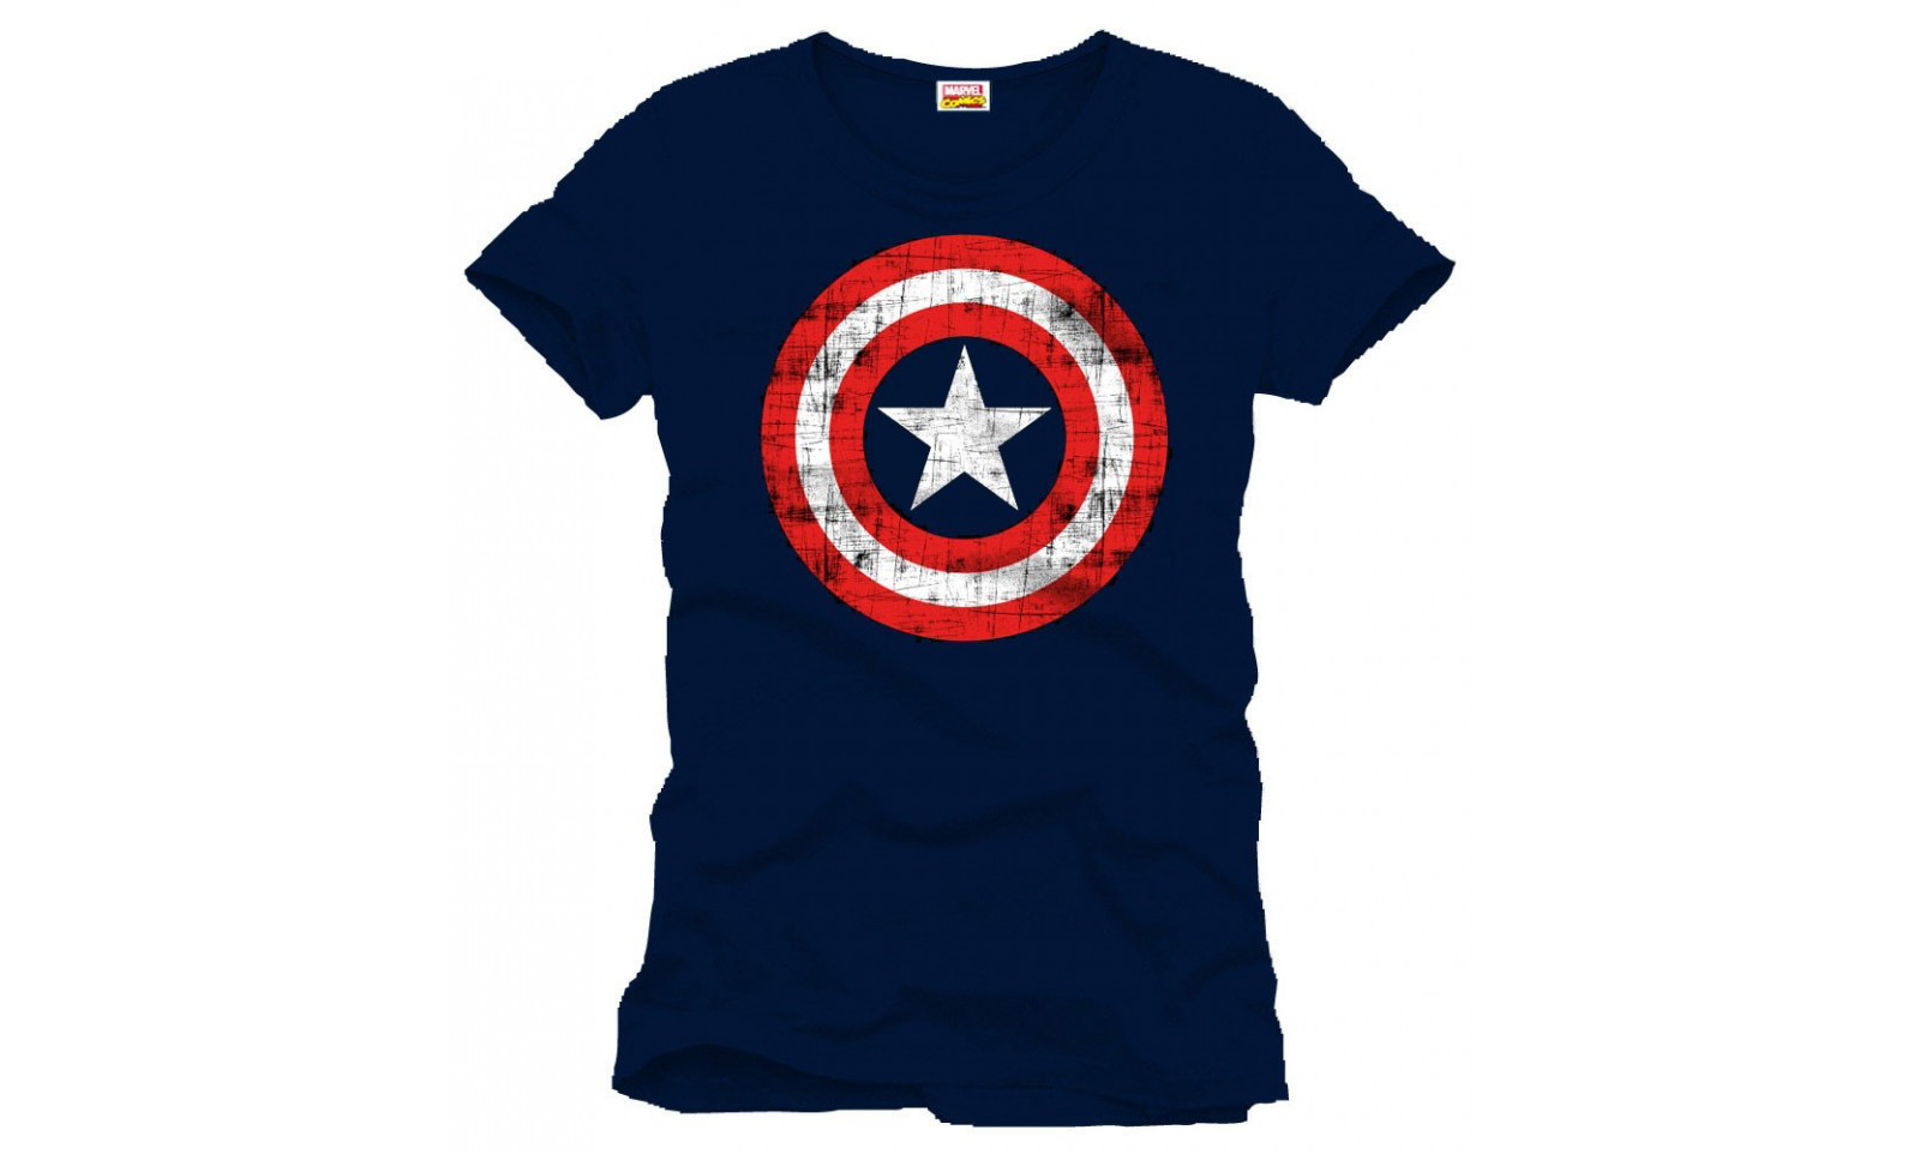 Marvel - Captain America Logo Navy Blue T-Shirt S